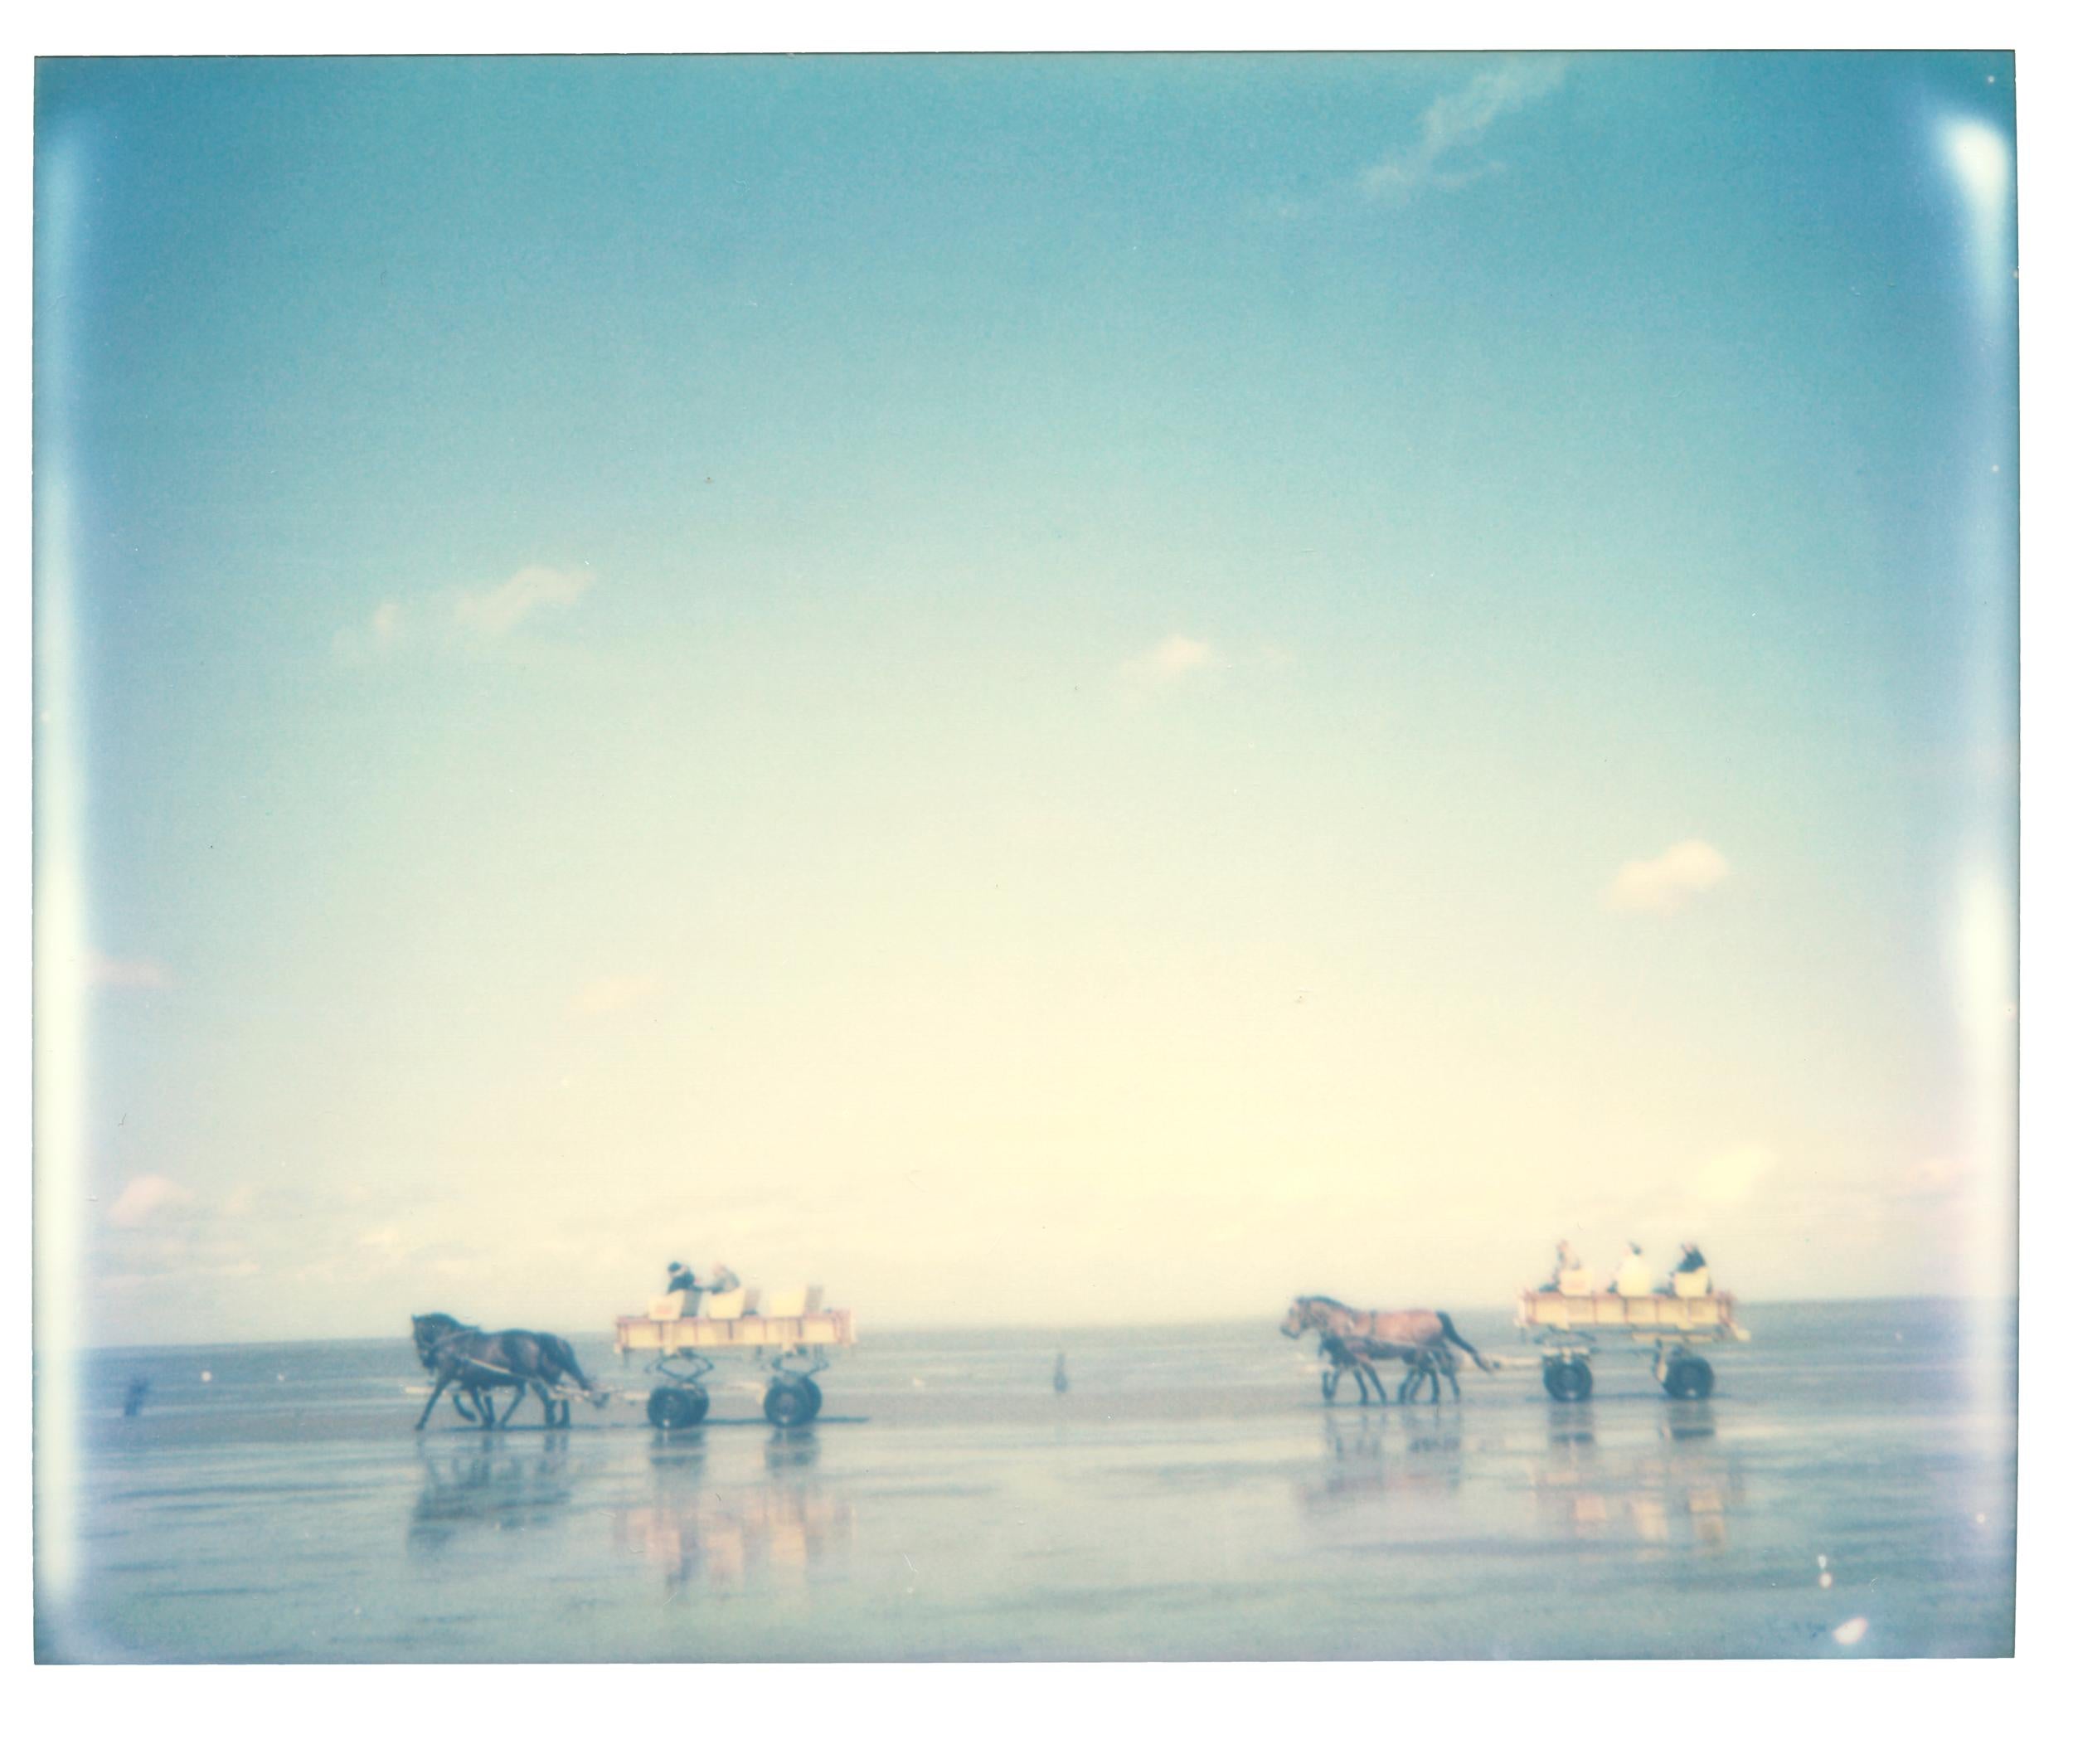 Stefanie Schneider Portrait Photograph - Traveling the Tide (Cuxhaven) - 21st Century, Polaroid, Figurative